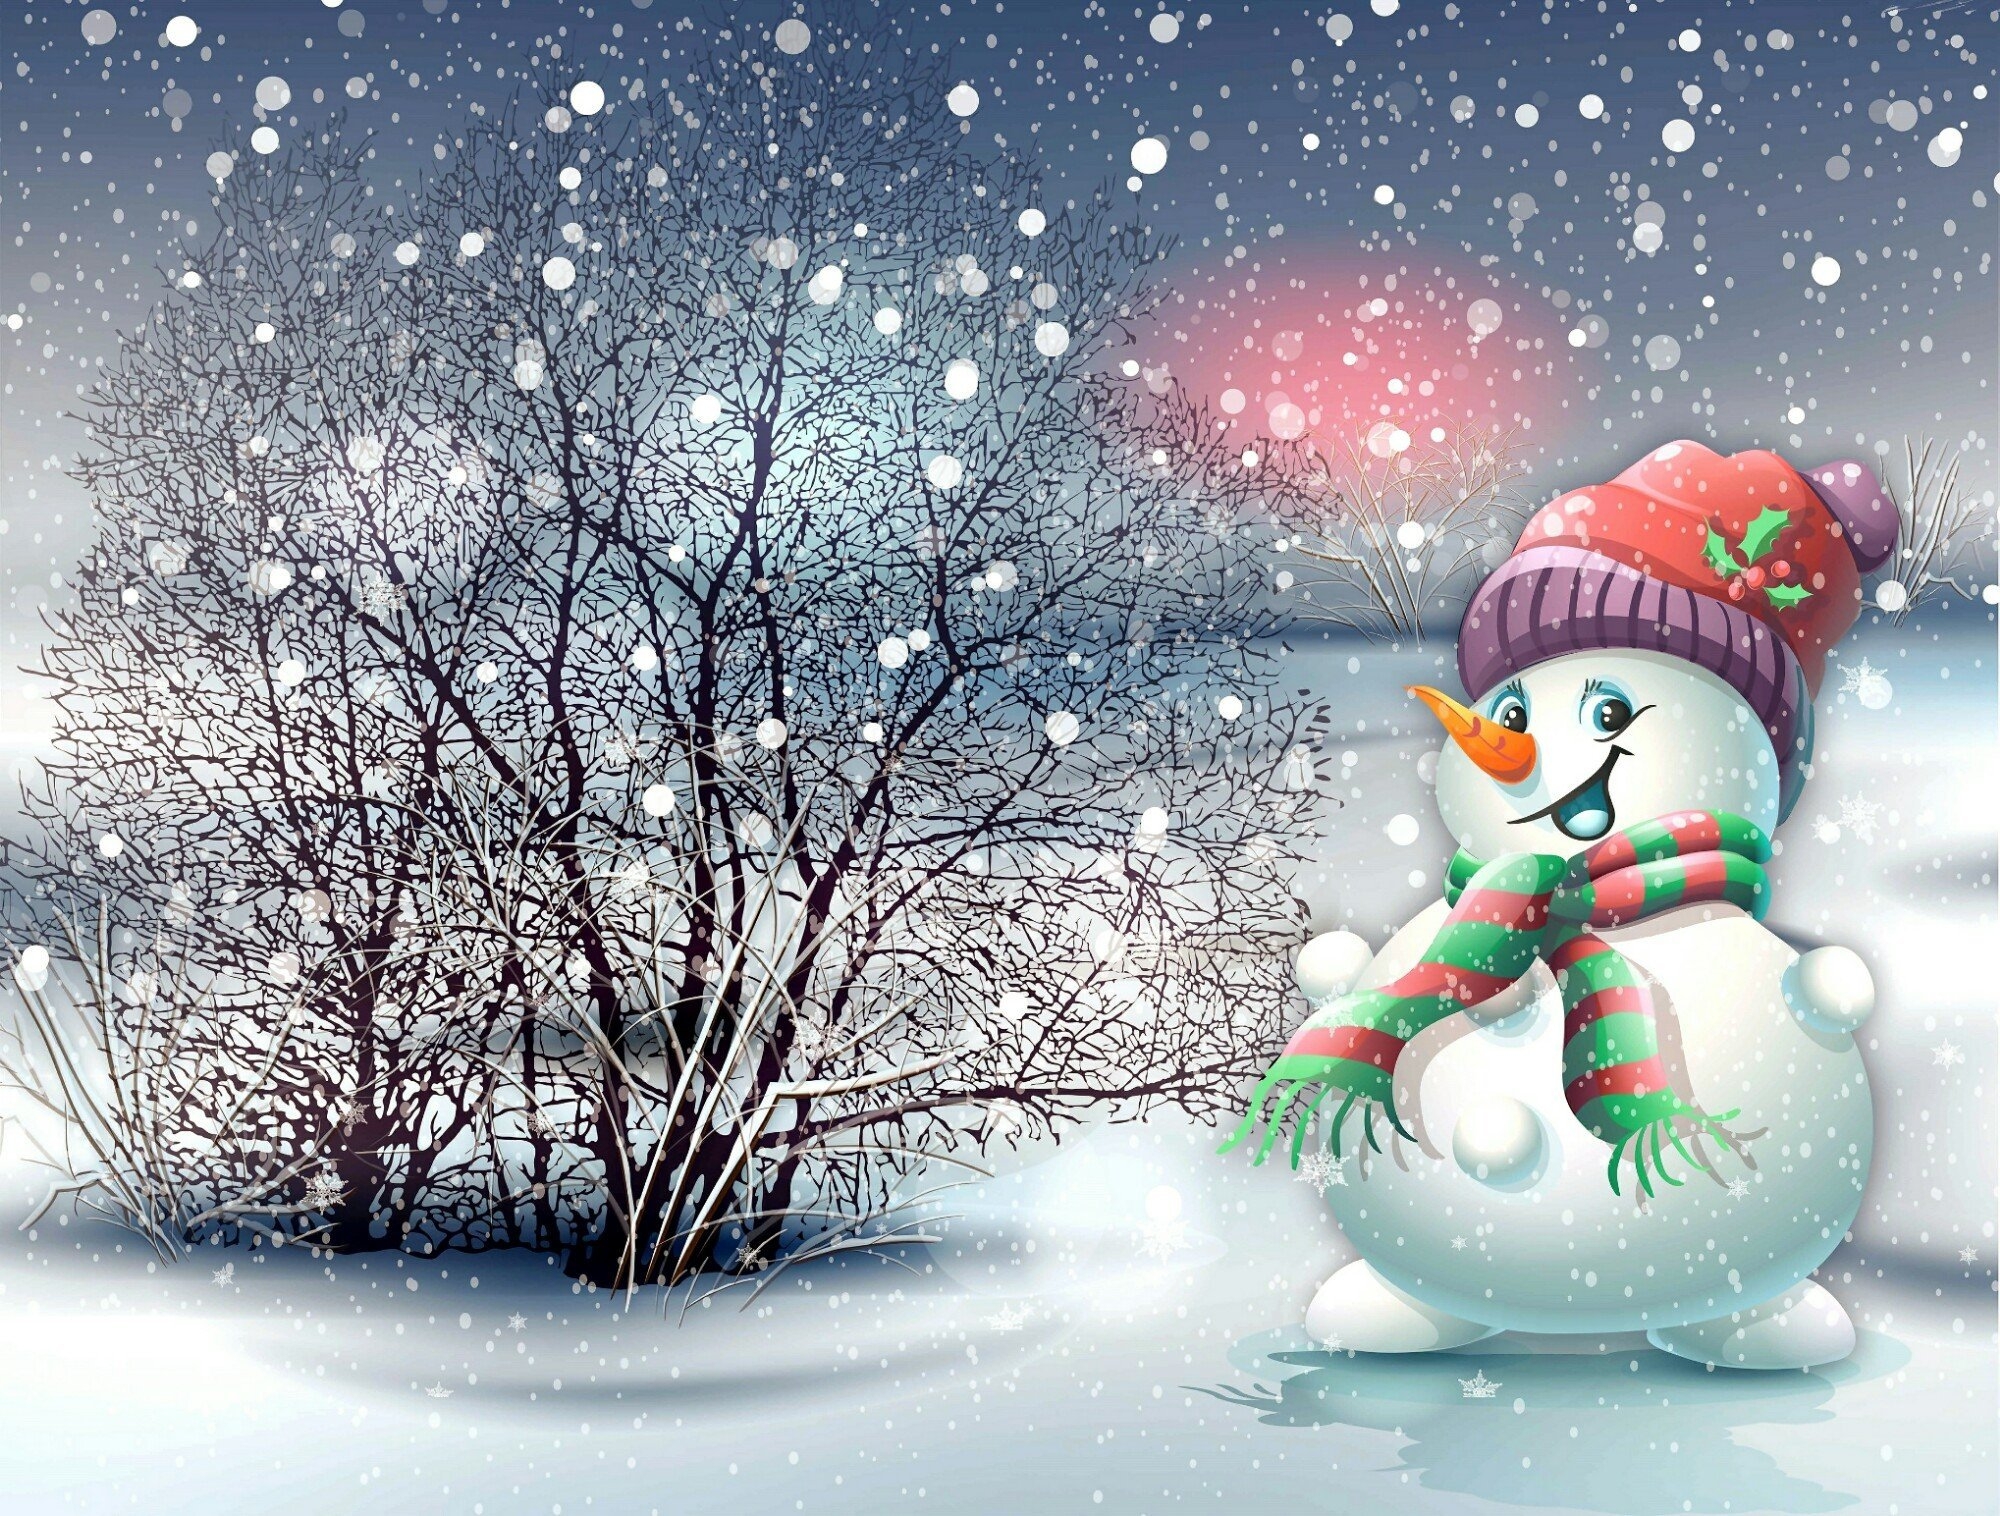 Открытки зимняя тематика. Зимние картинки для детей. Открытка "Снеговик". Открытка зимняя. Пейзаж со снеговиком.